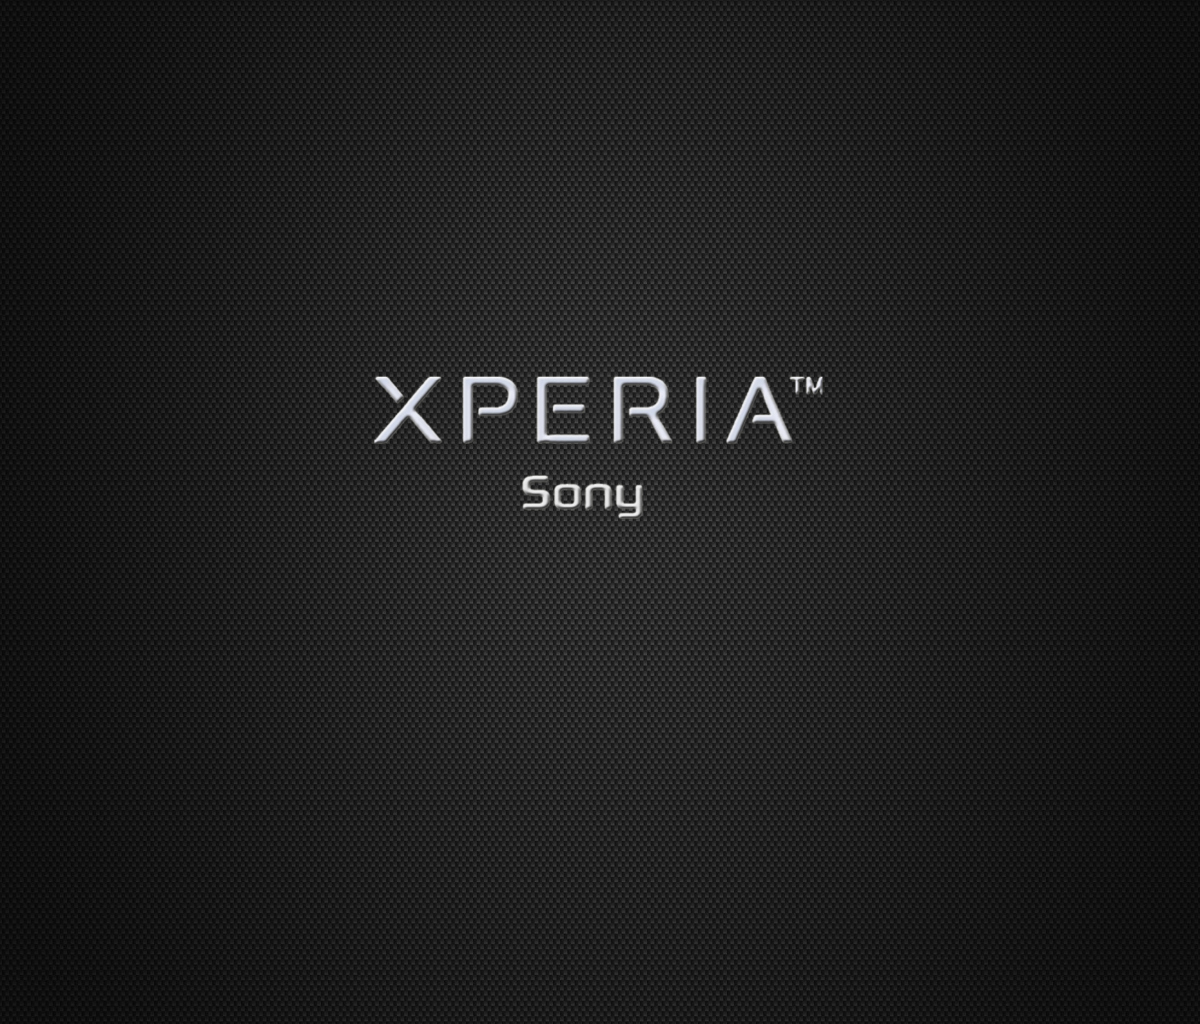 Sfondi Sony Xperia 1200x1024